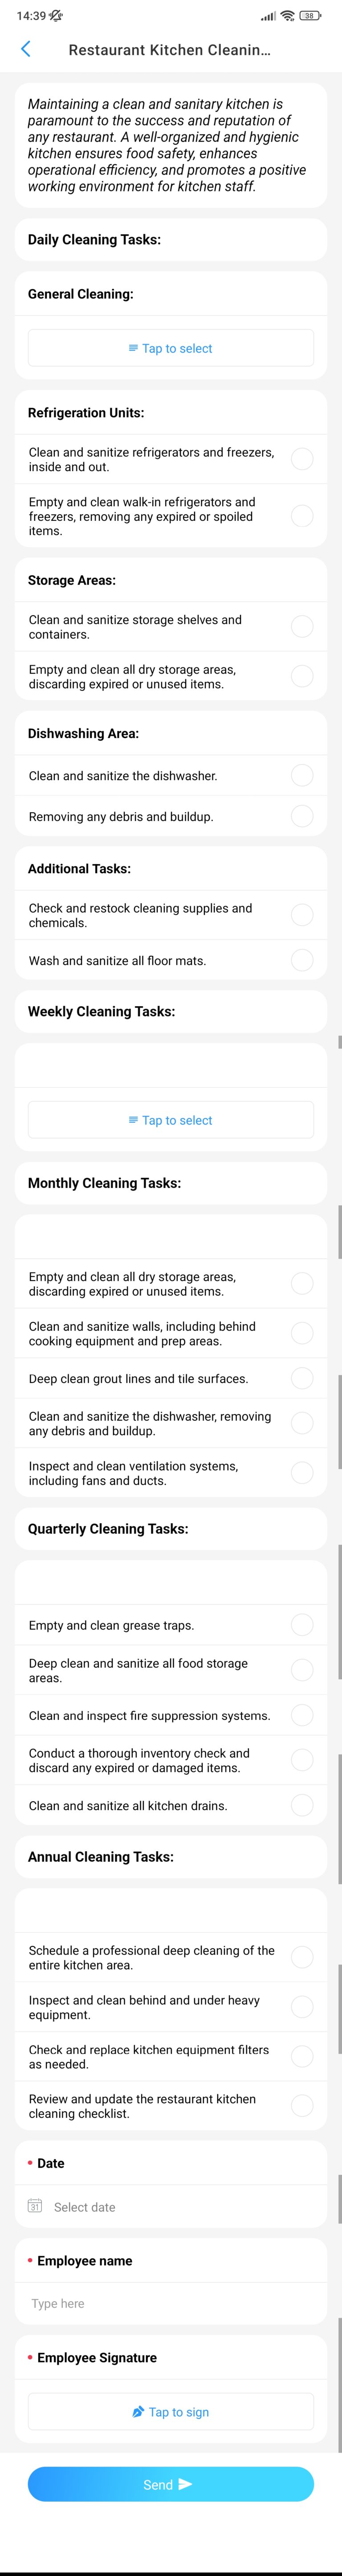 Restaurant Kitchen Cleaning Checklist screenshot